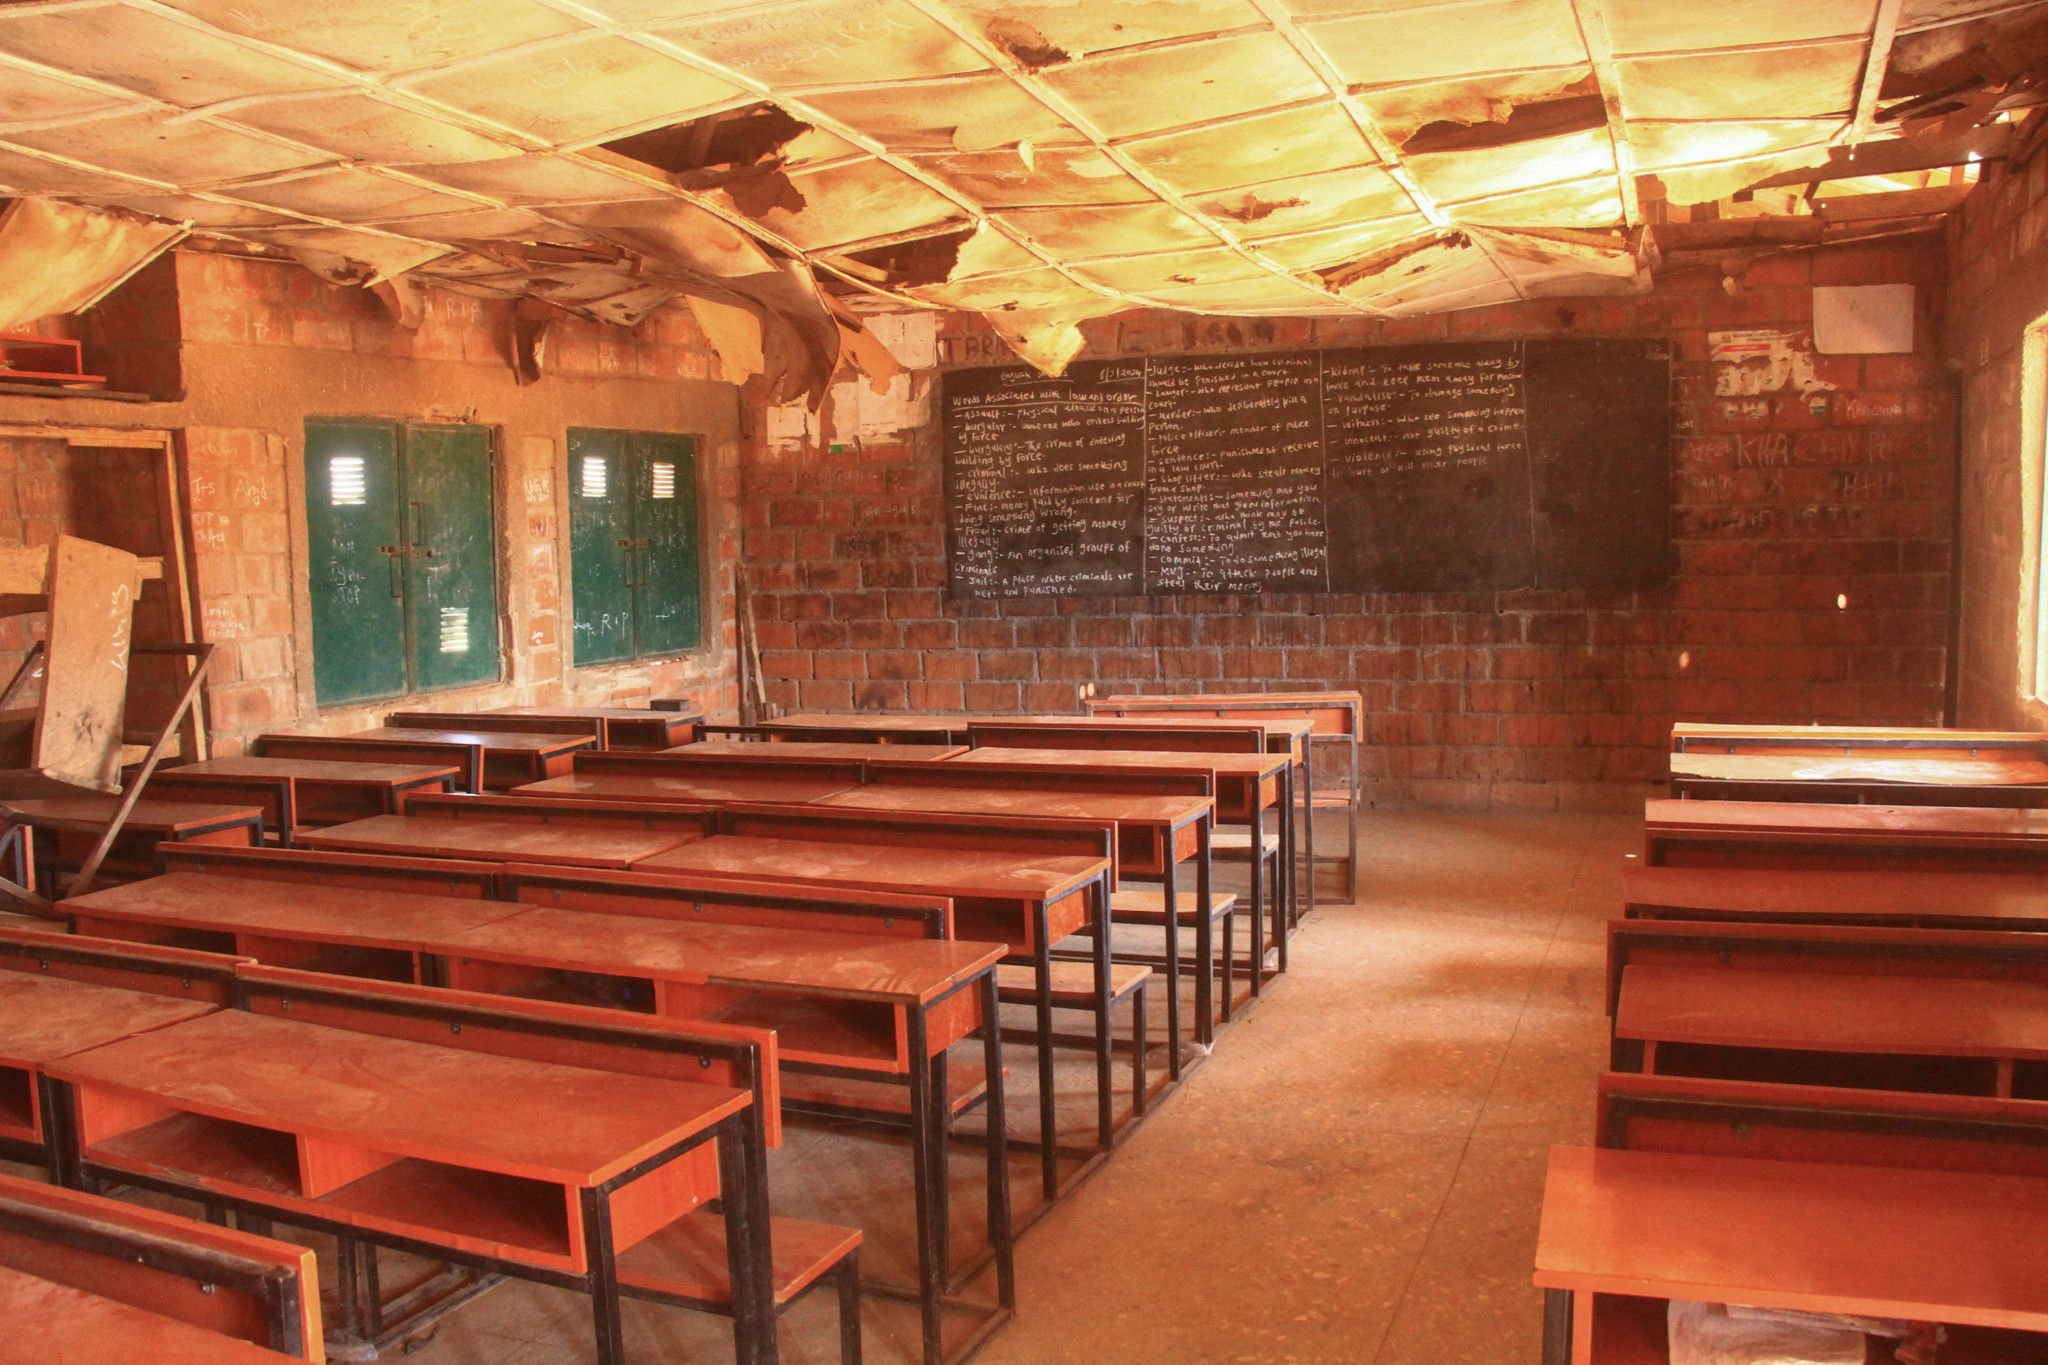 15 élèves enlevés par des hommes armés dans une école